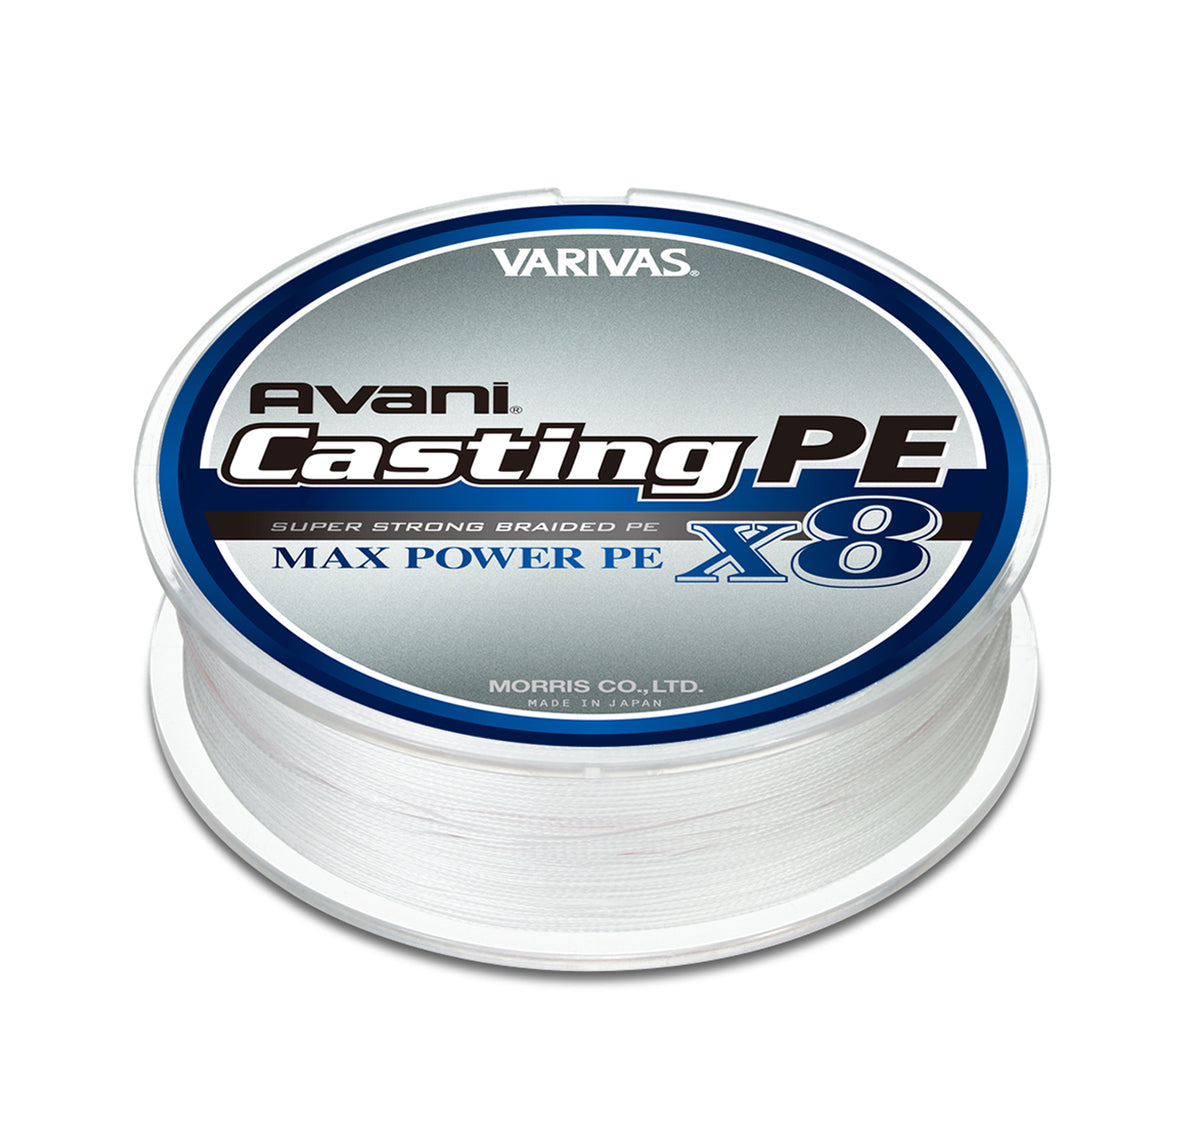 Varivas Avani Casting PE Max Power X8 Braid 300m